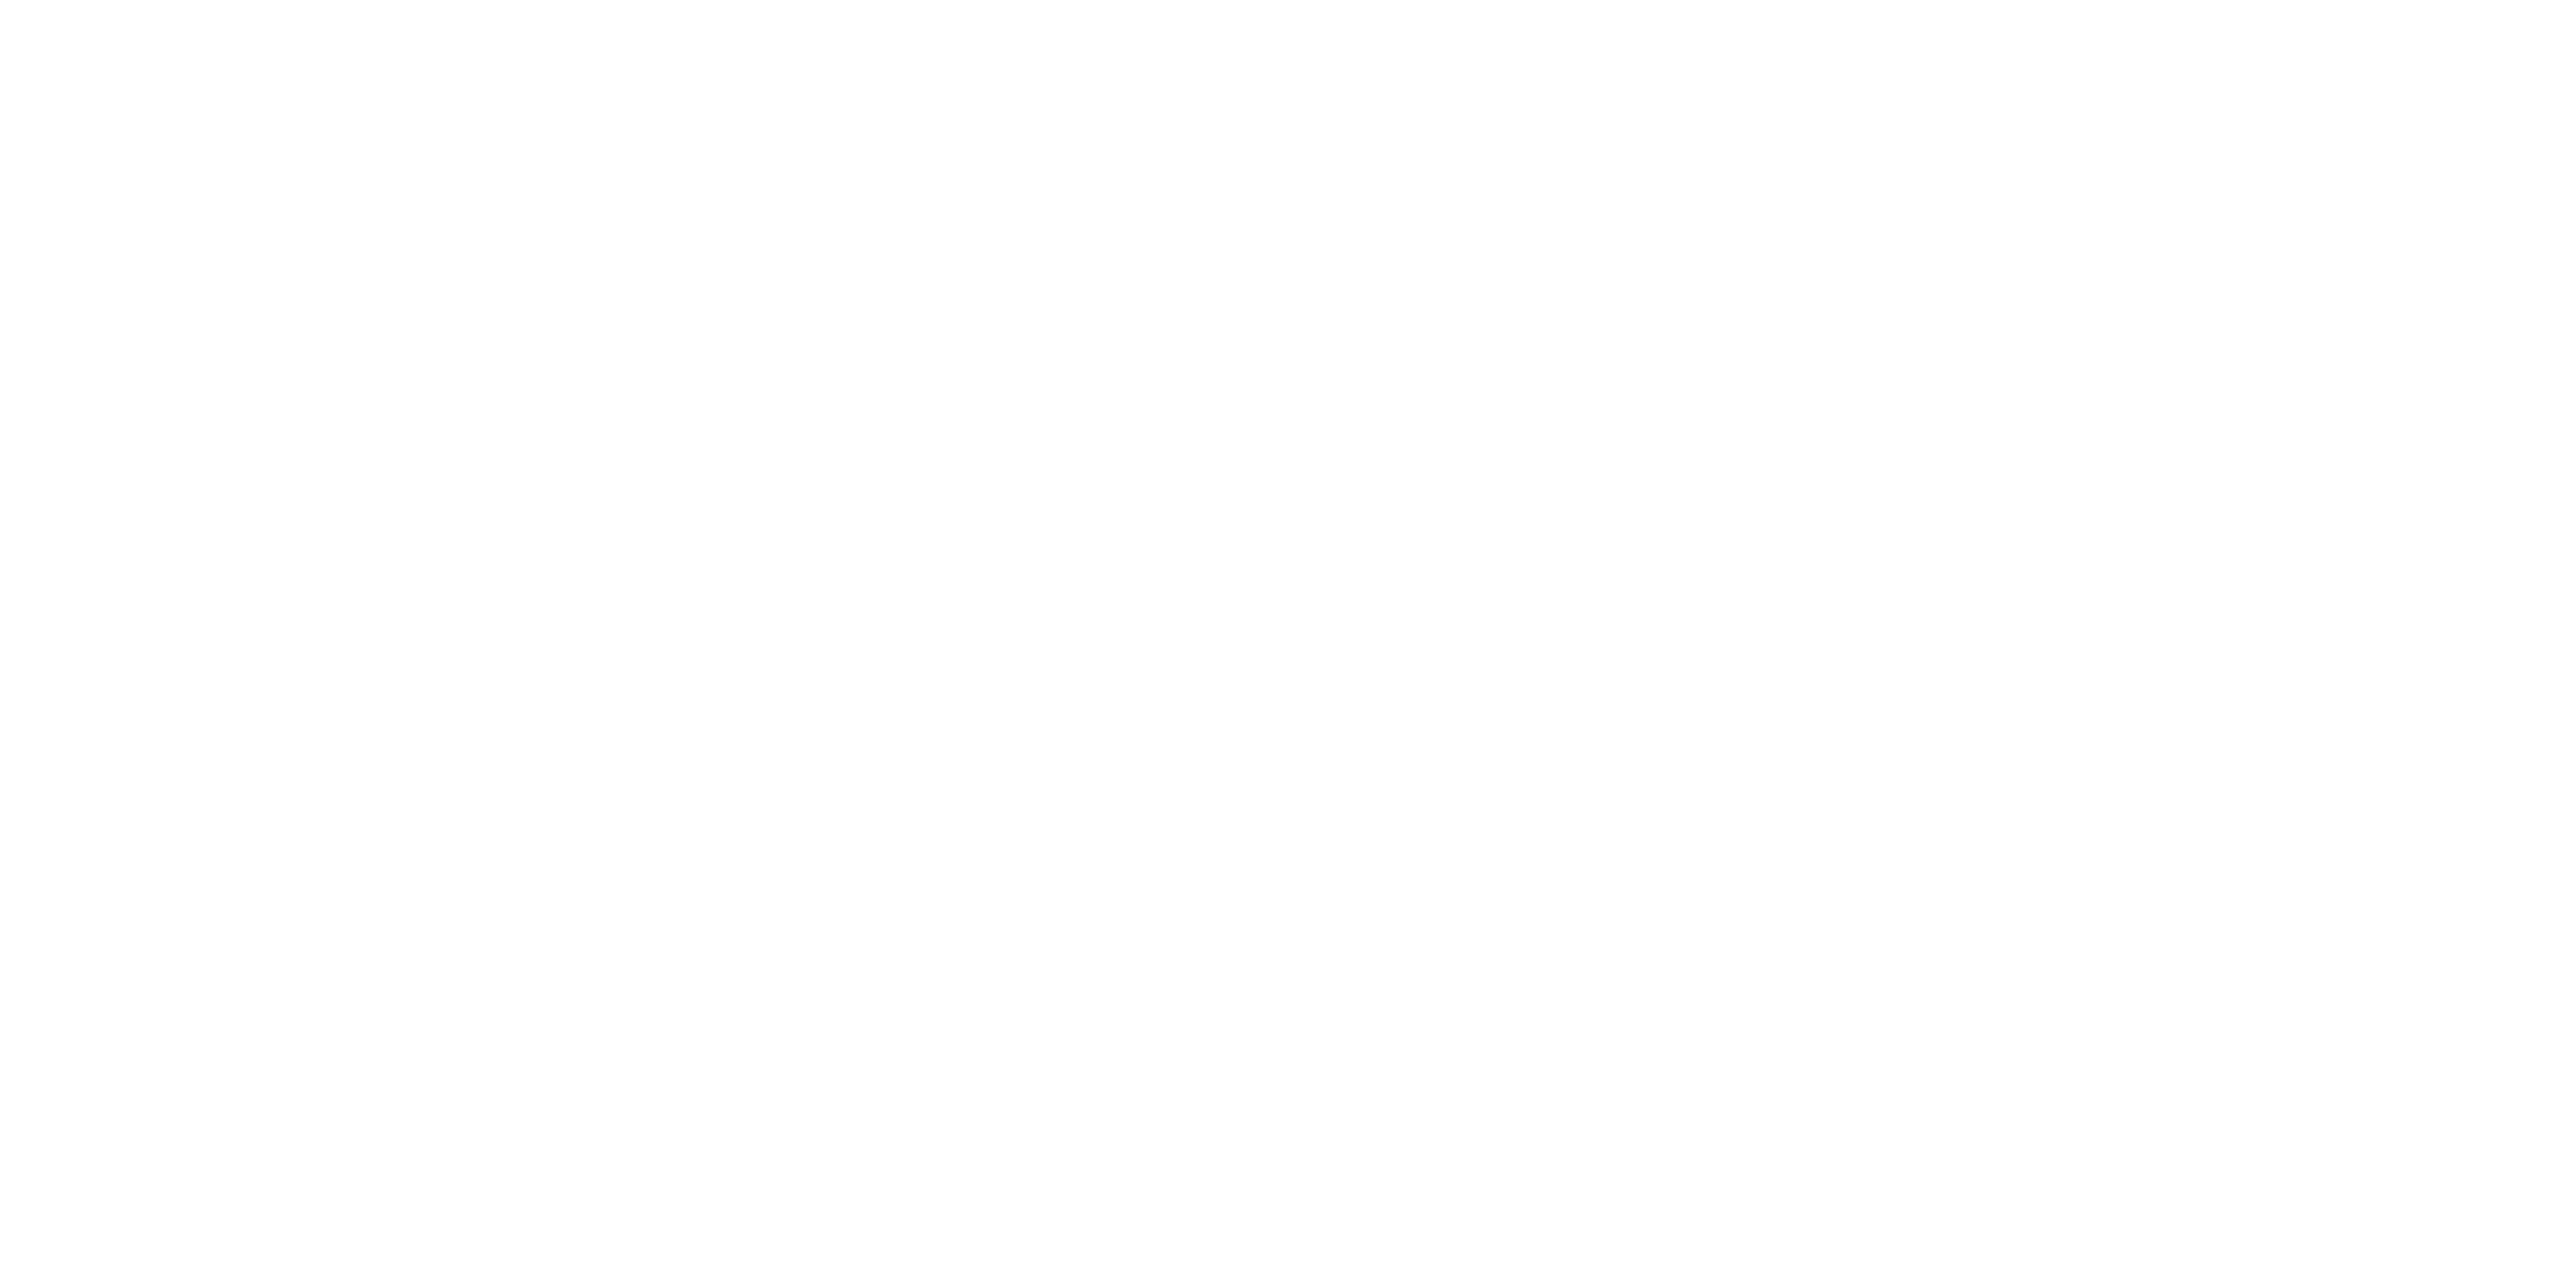 EdgeConnect